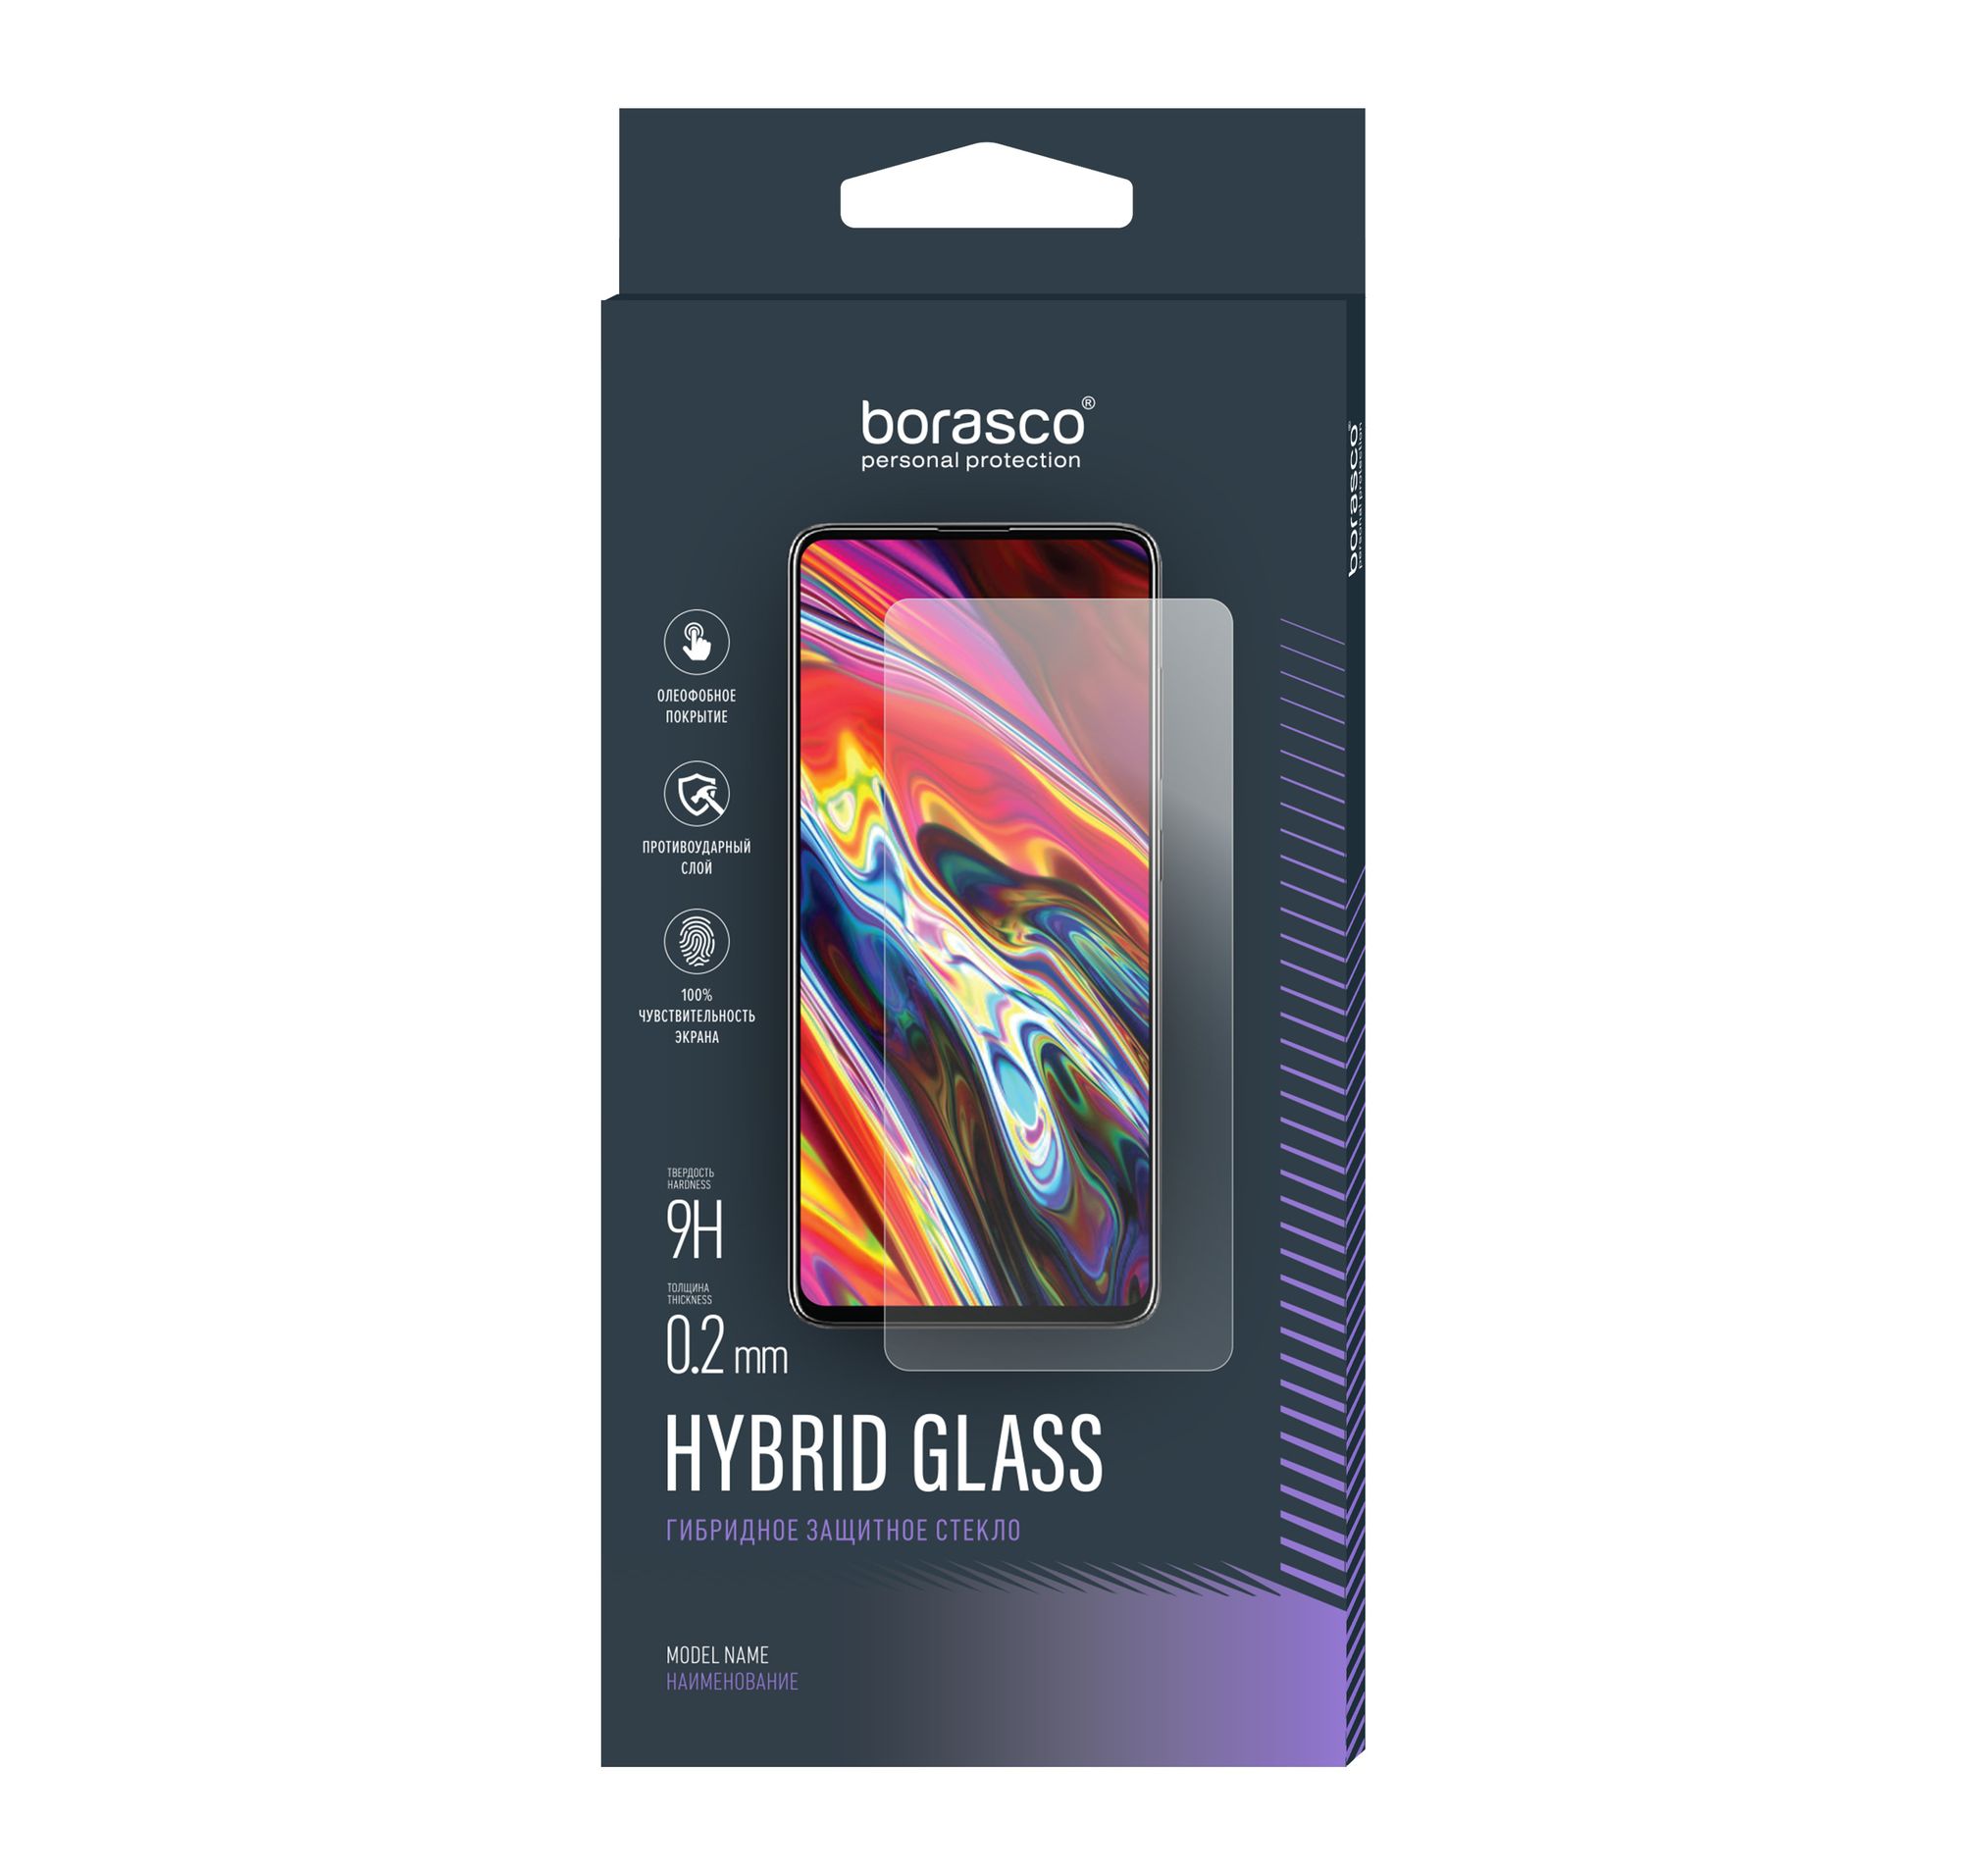 Стекло защитное Hybrid Glass VSP 0,26 мм для Samsung Galaxy J2 2018 защитное стекло на samsung j250f galaxy j2 2018 j2 pro 2018 9d черный